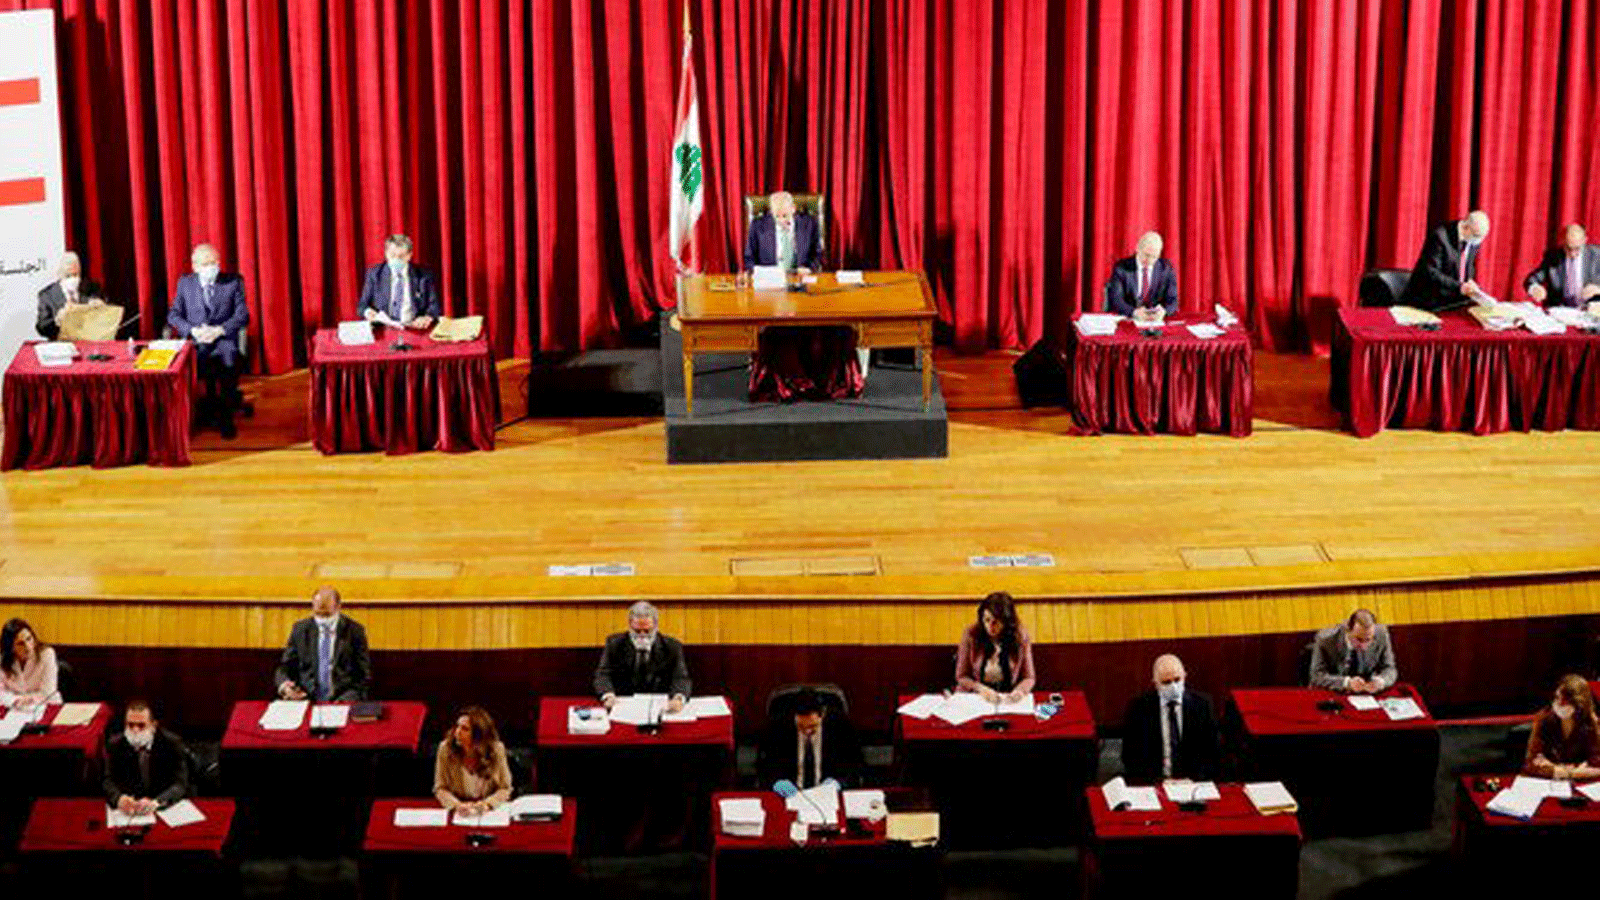 مجلس النواب اللبناني يعقد اجتماعاً في قصر اليونسكو بالعاصمة بيروت في إطار إجراءات لوقف انتشار فيروس كورونا الجديد. صورة في 21 نيسان/ أبريل 2020